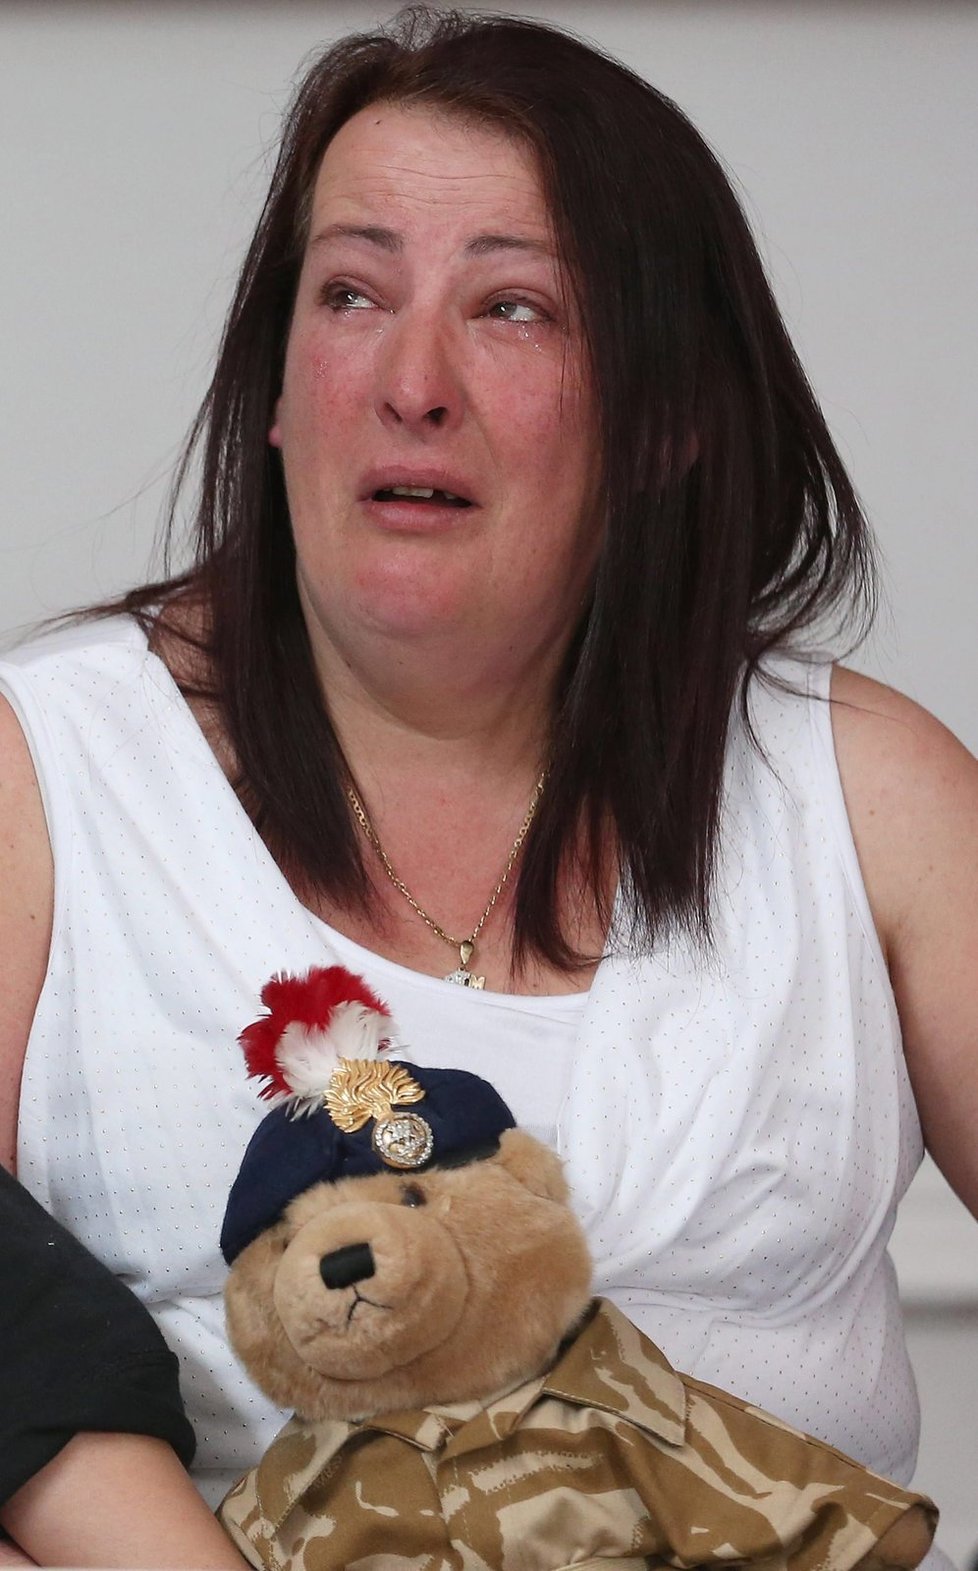 Mamince zavražděného vojáka Lyn Rigby zbyly oči jen pro pláč